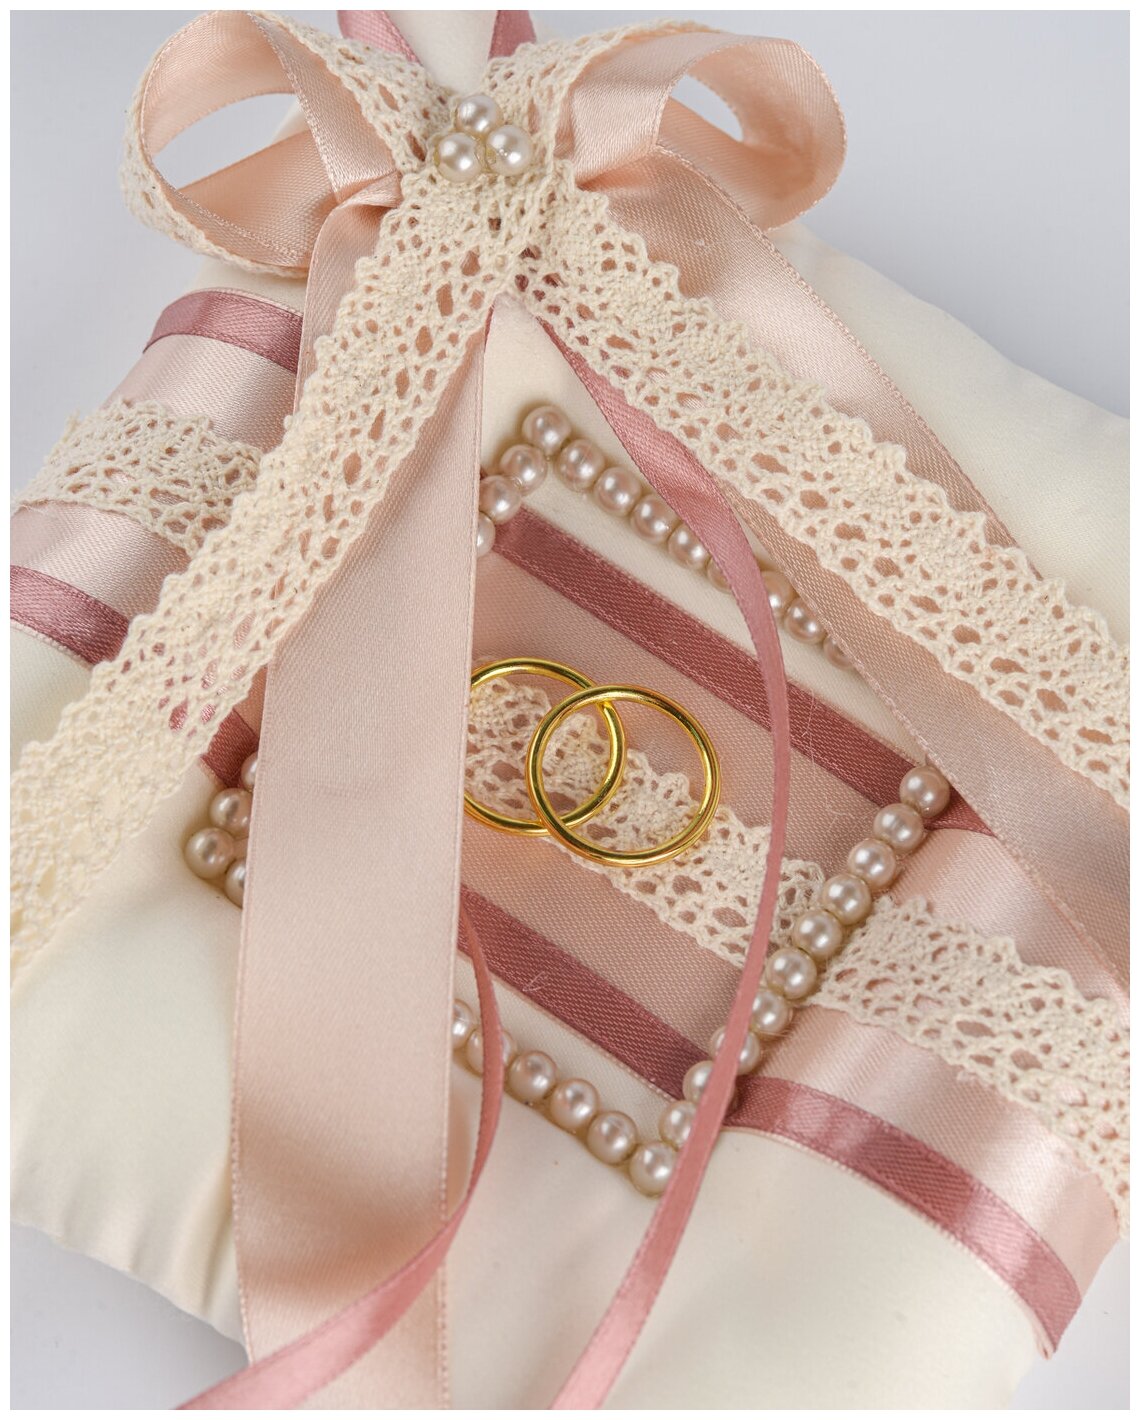 Свадебная подушечка для колец молодоженов из атласа айвори, бежевого кружева и коричневых лент, с жемчужными бусинами в пастельных тонах